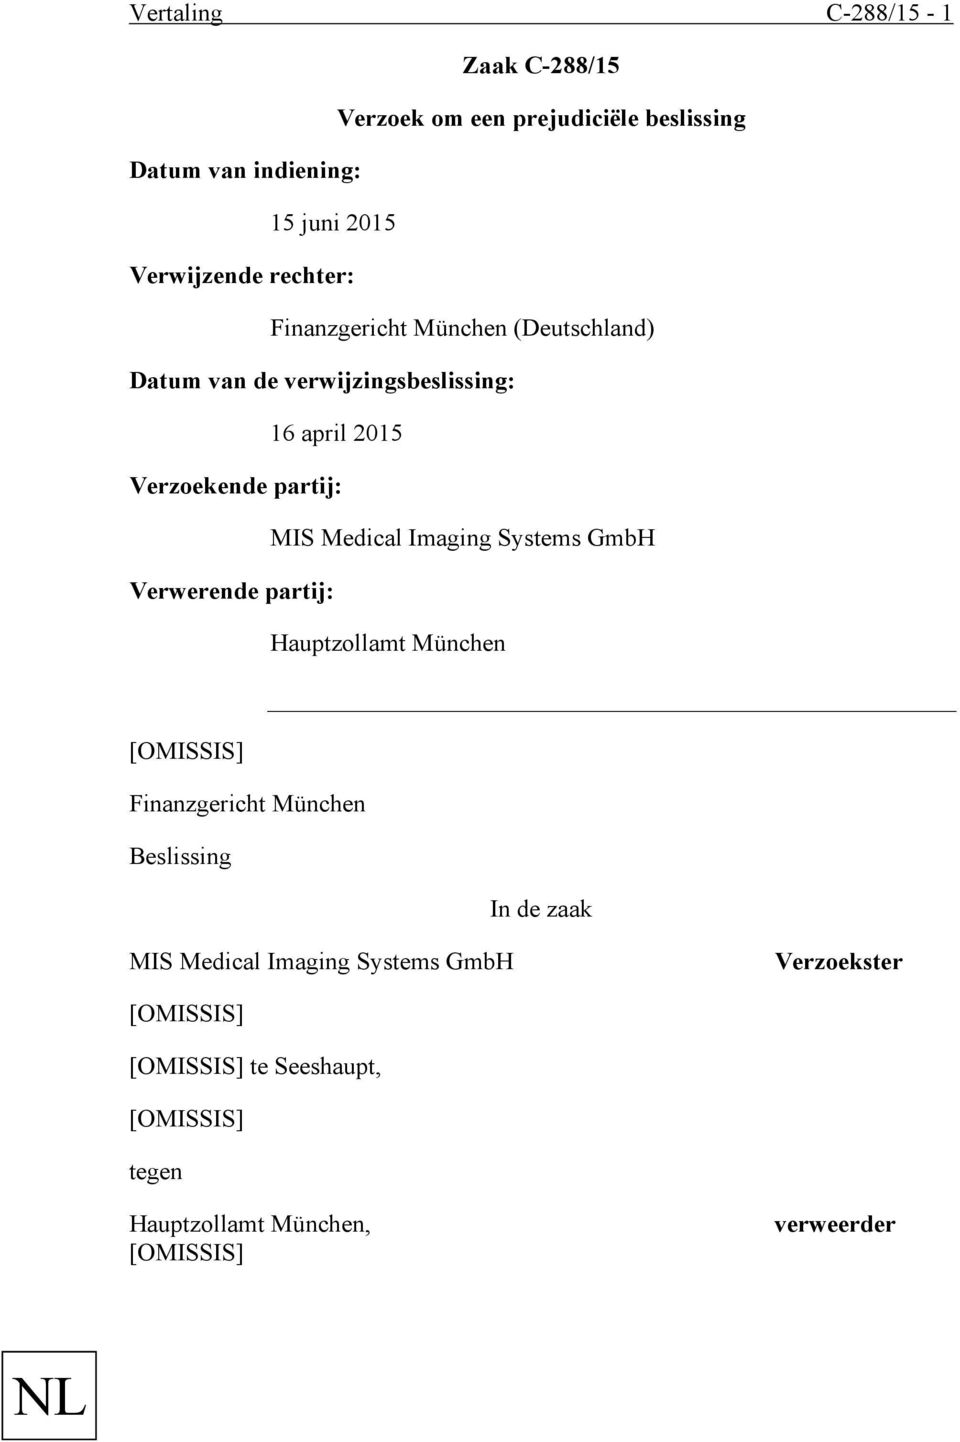 Verzoekende partij: MIS Medical Imaging Systems GmbH Verwerende partij: Hauptzollamt München Finanzgericht